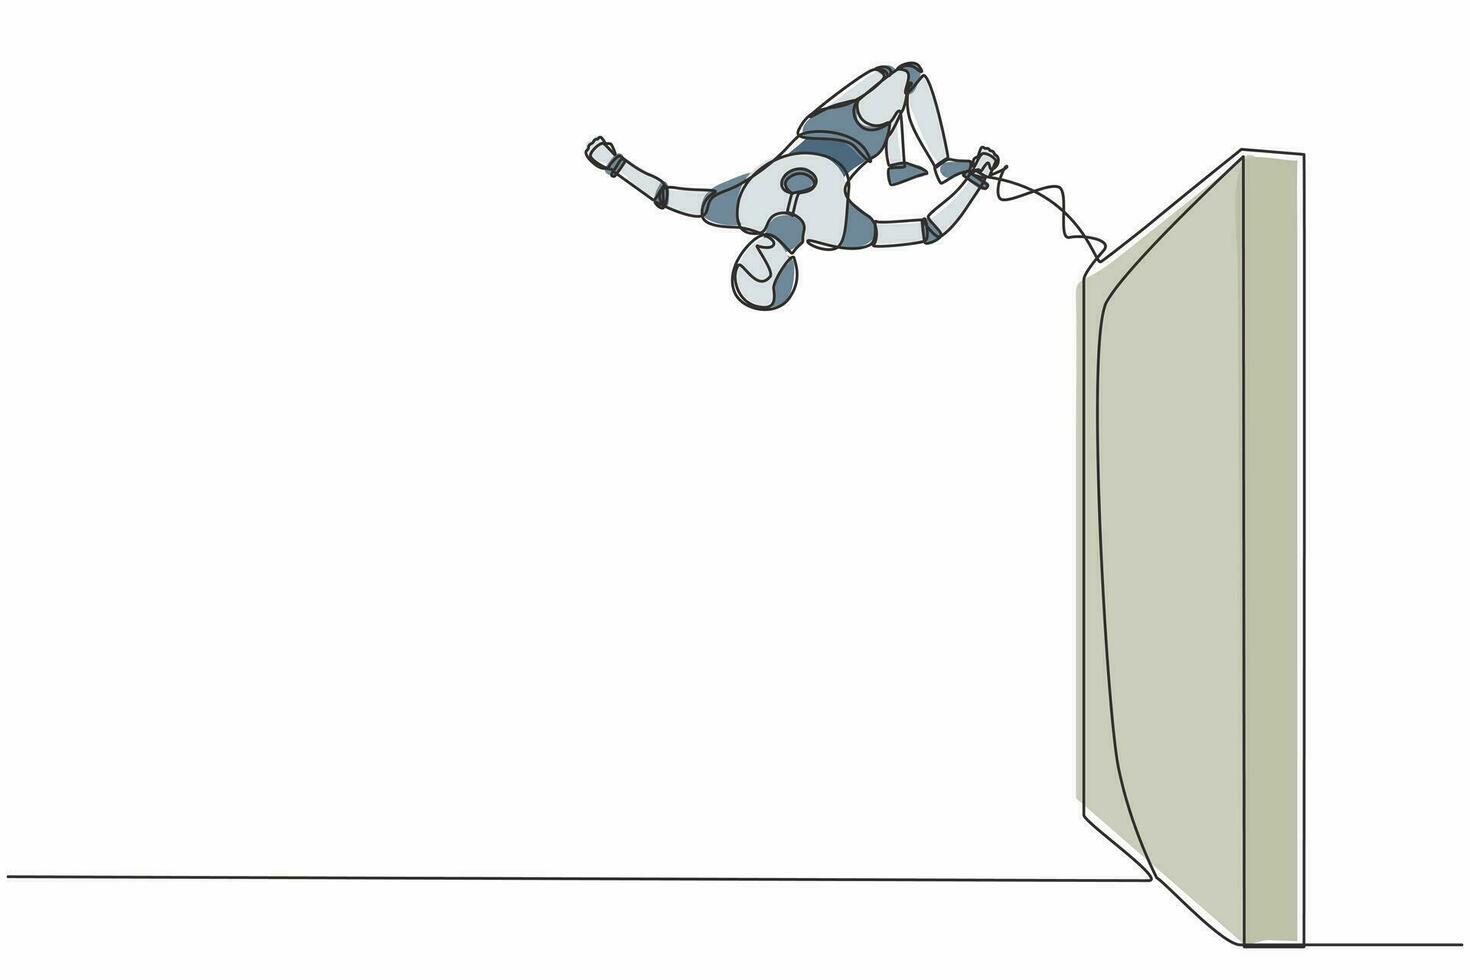 robot de dibujo de una sola línea continua saltando sobre una pared de ladrillo con estilo acrobático. Inteligencia artificial robótica moderna. industria de la tecnología electrónica. ilustración de vector de diseño gráfico de una línea